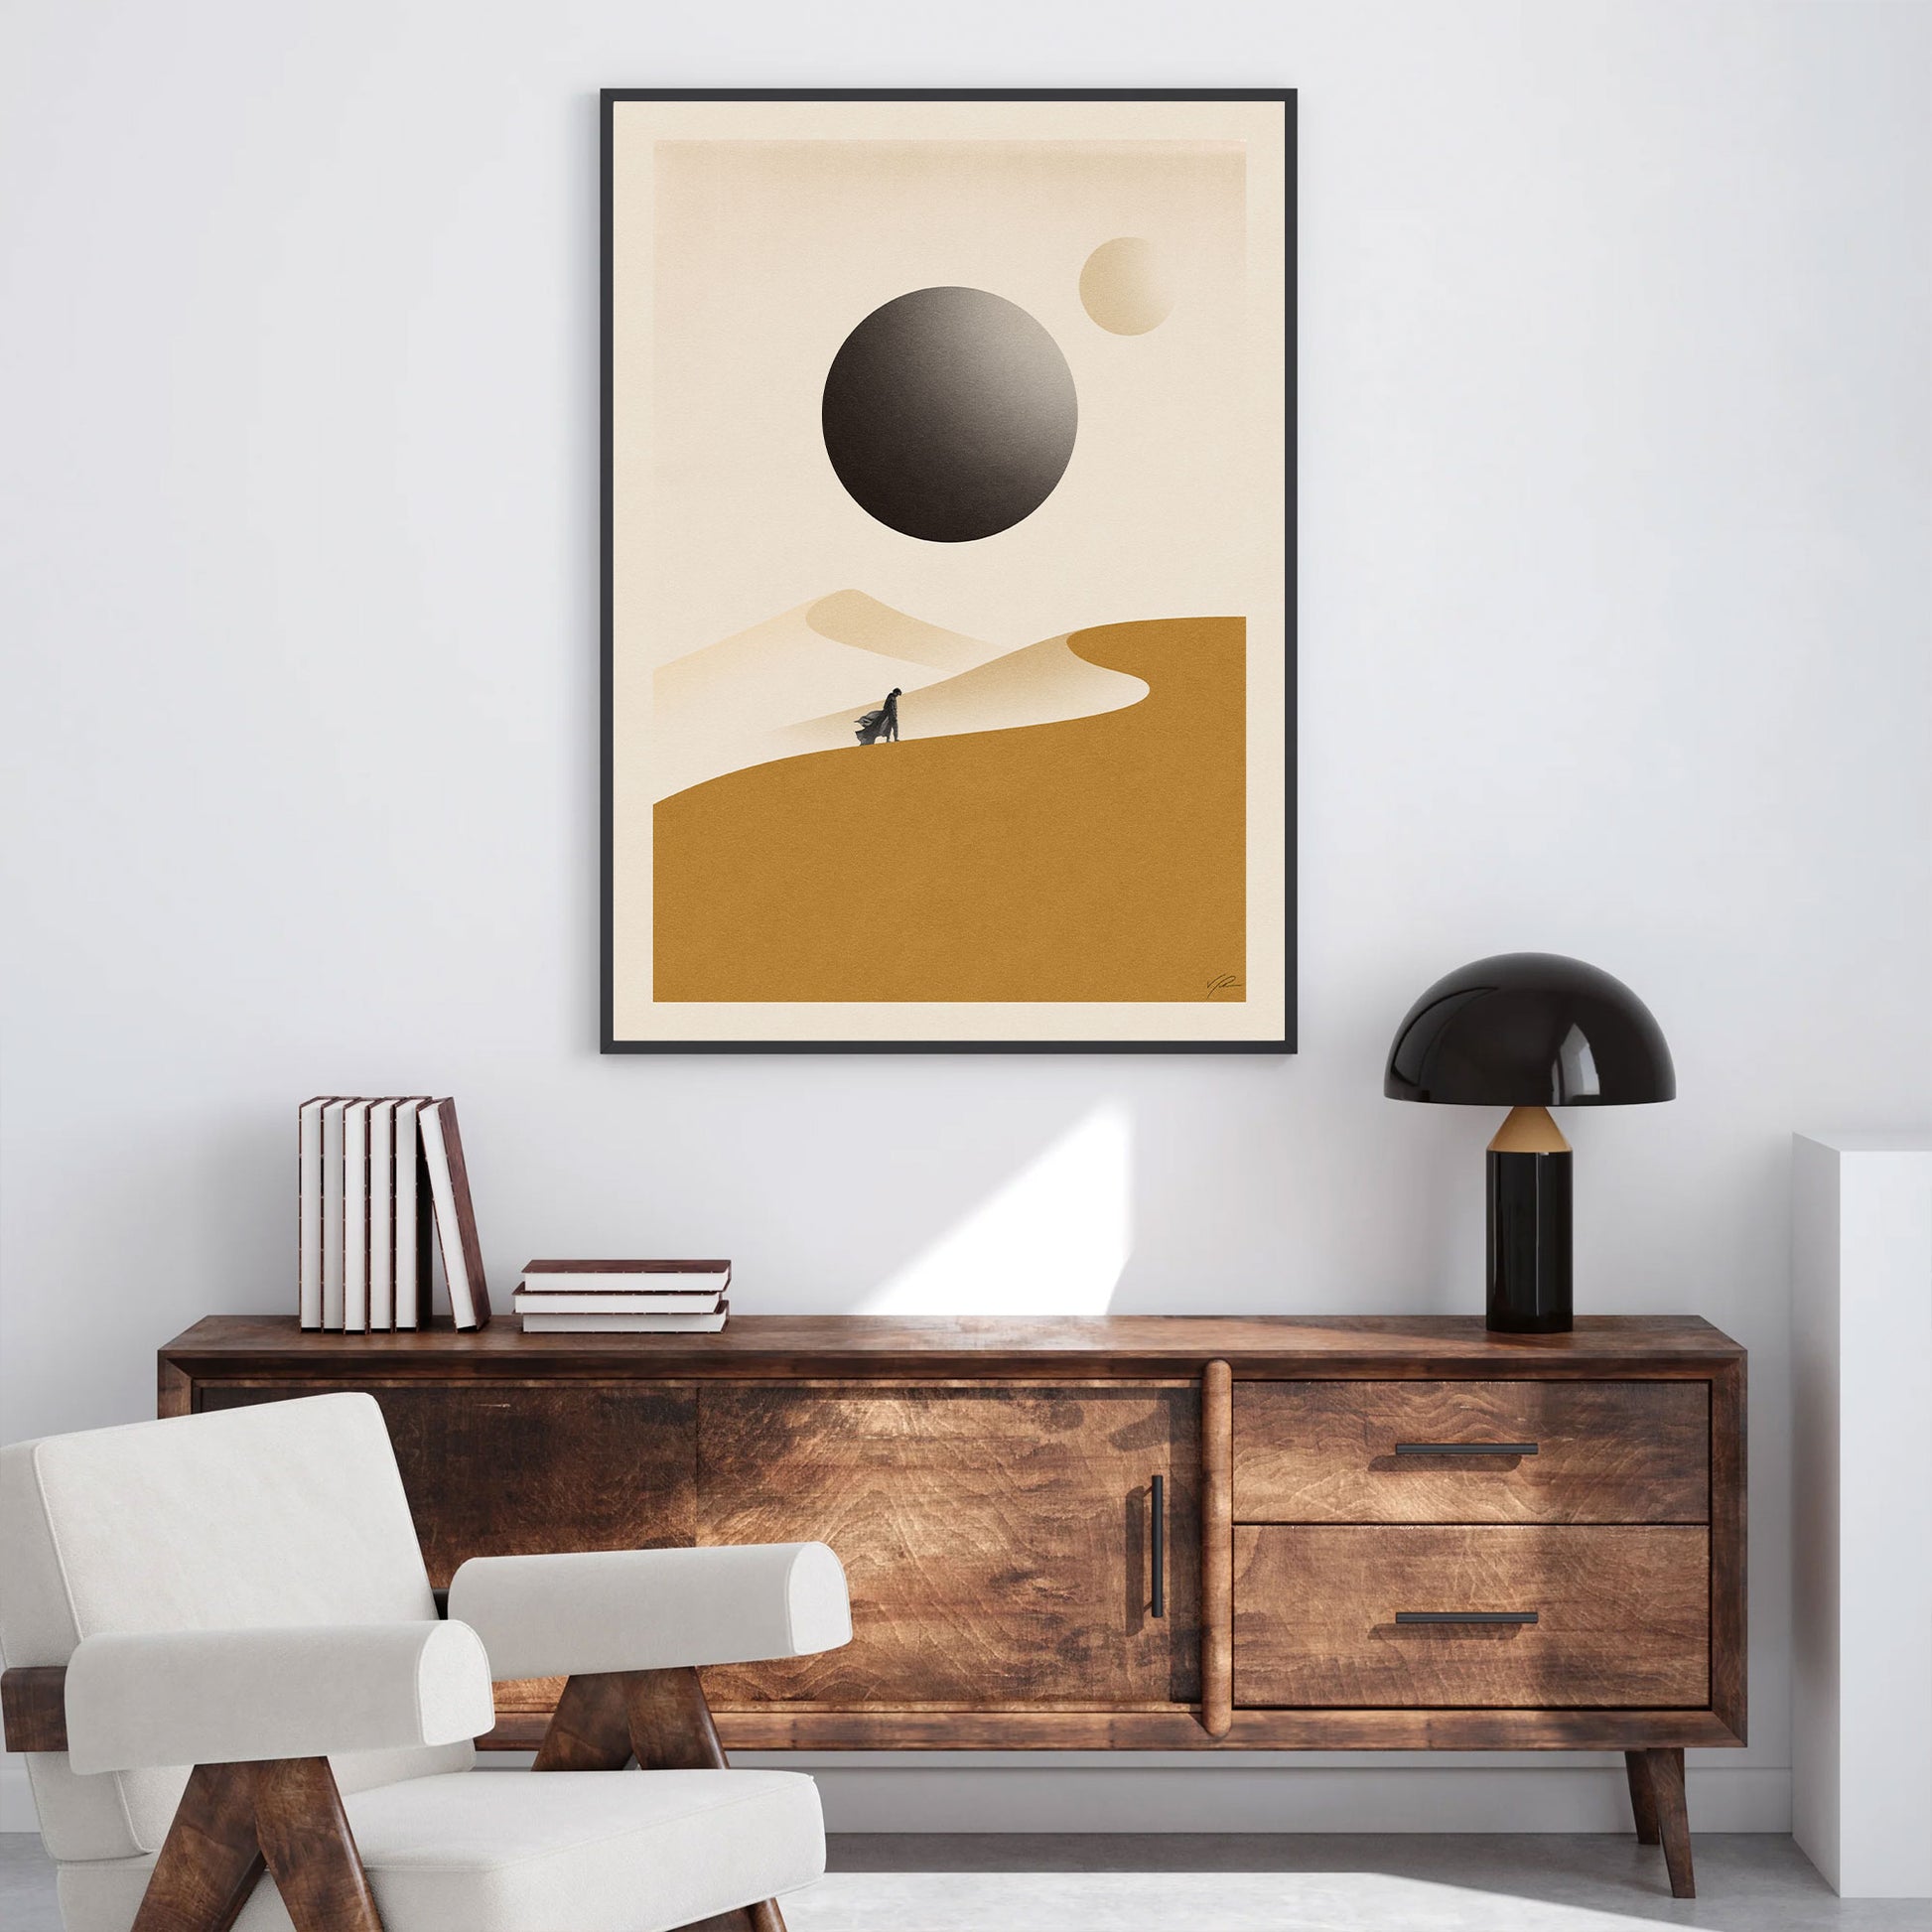 Dune - Print Arts - dune, movie poster